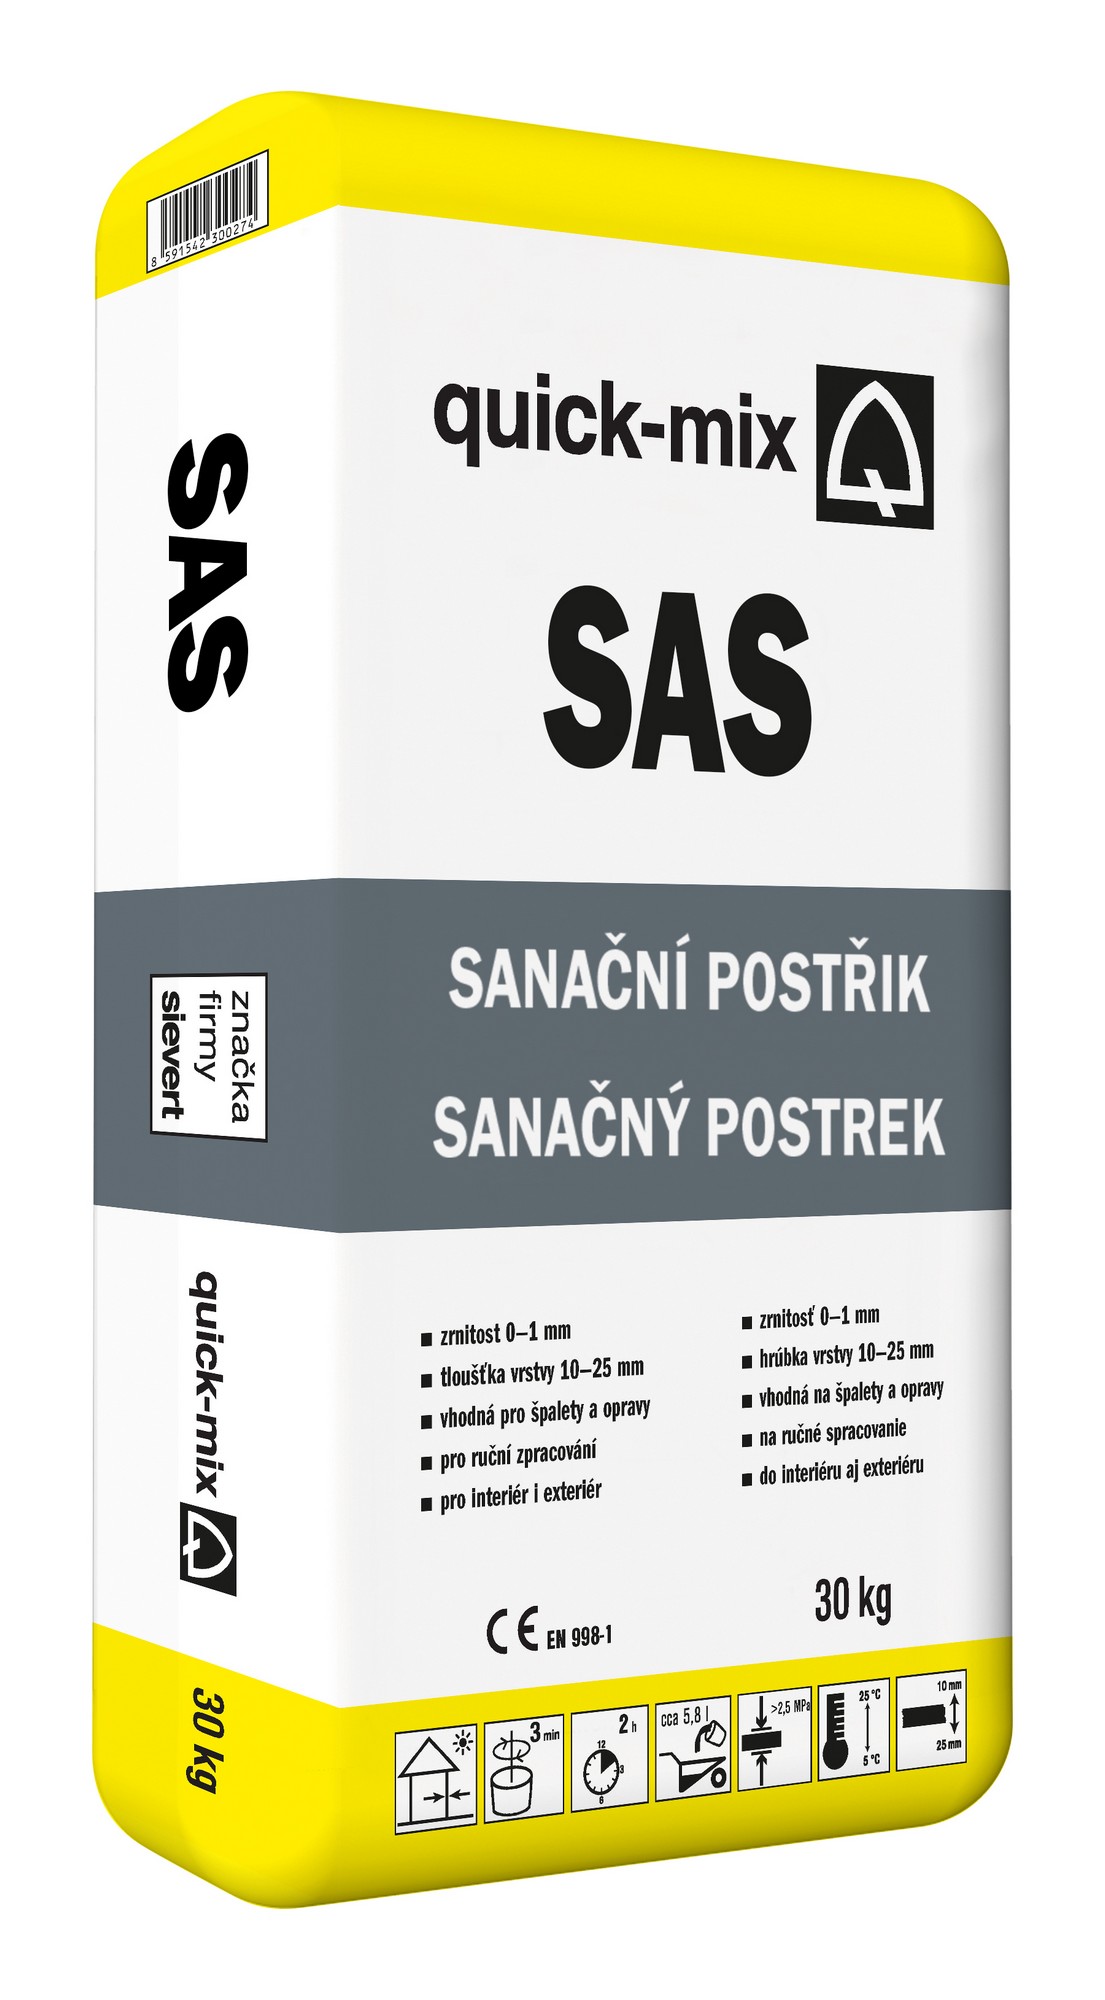 Postřik sanační Sakret/Quick-mix SAS 30kg